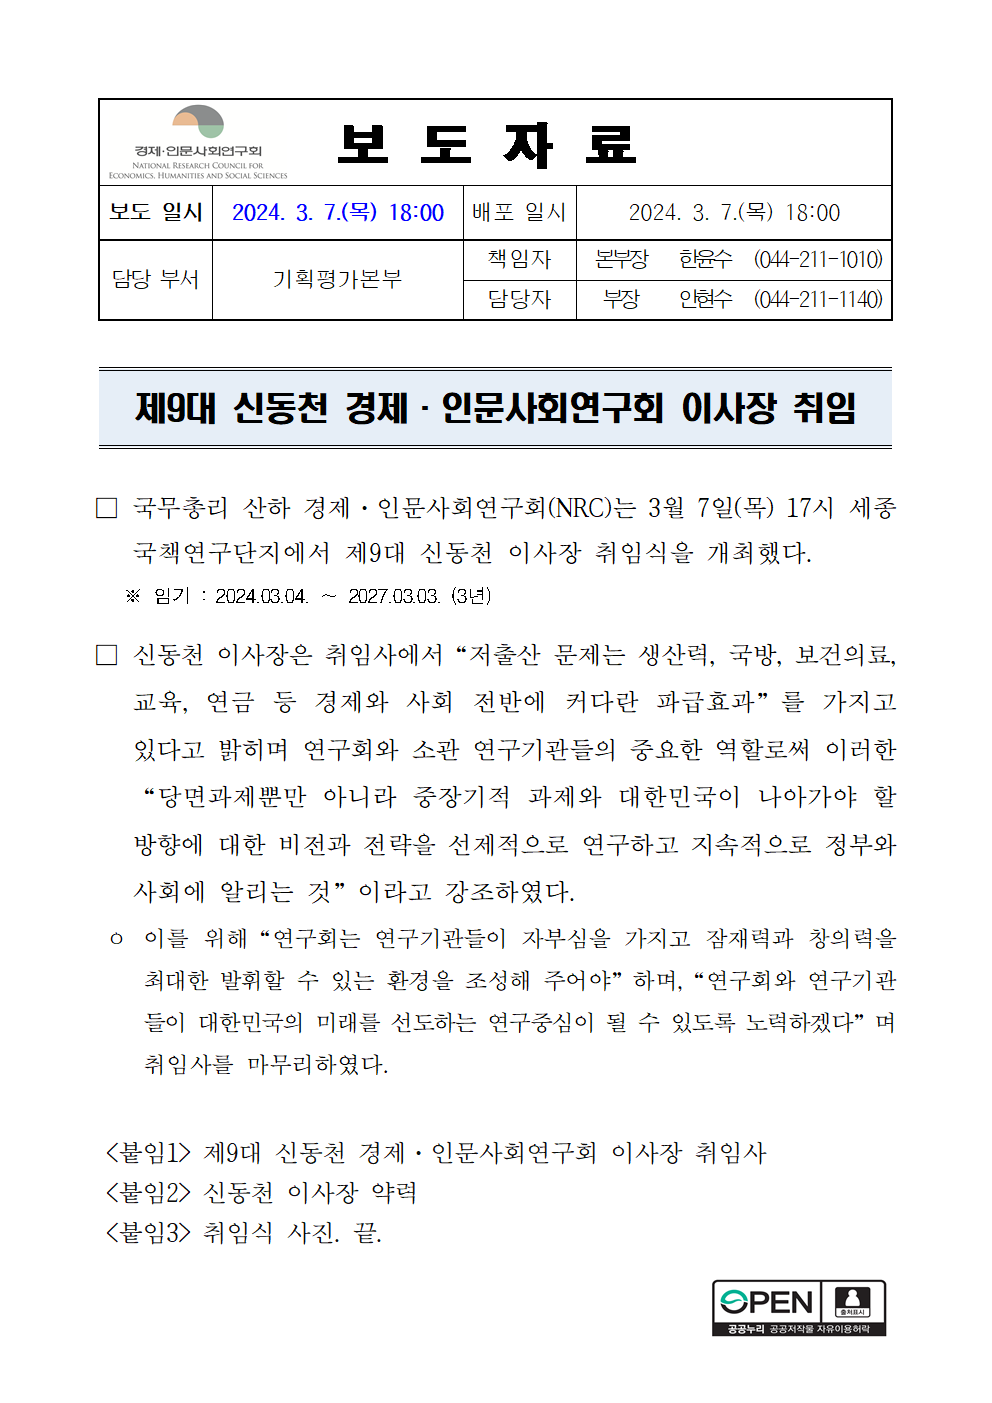 제9대 신동천 경제·인문사회연구회 이사장 취임 상세 하단 참조